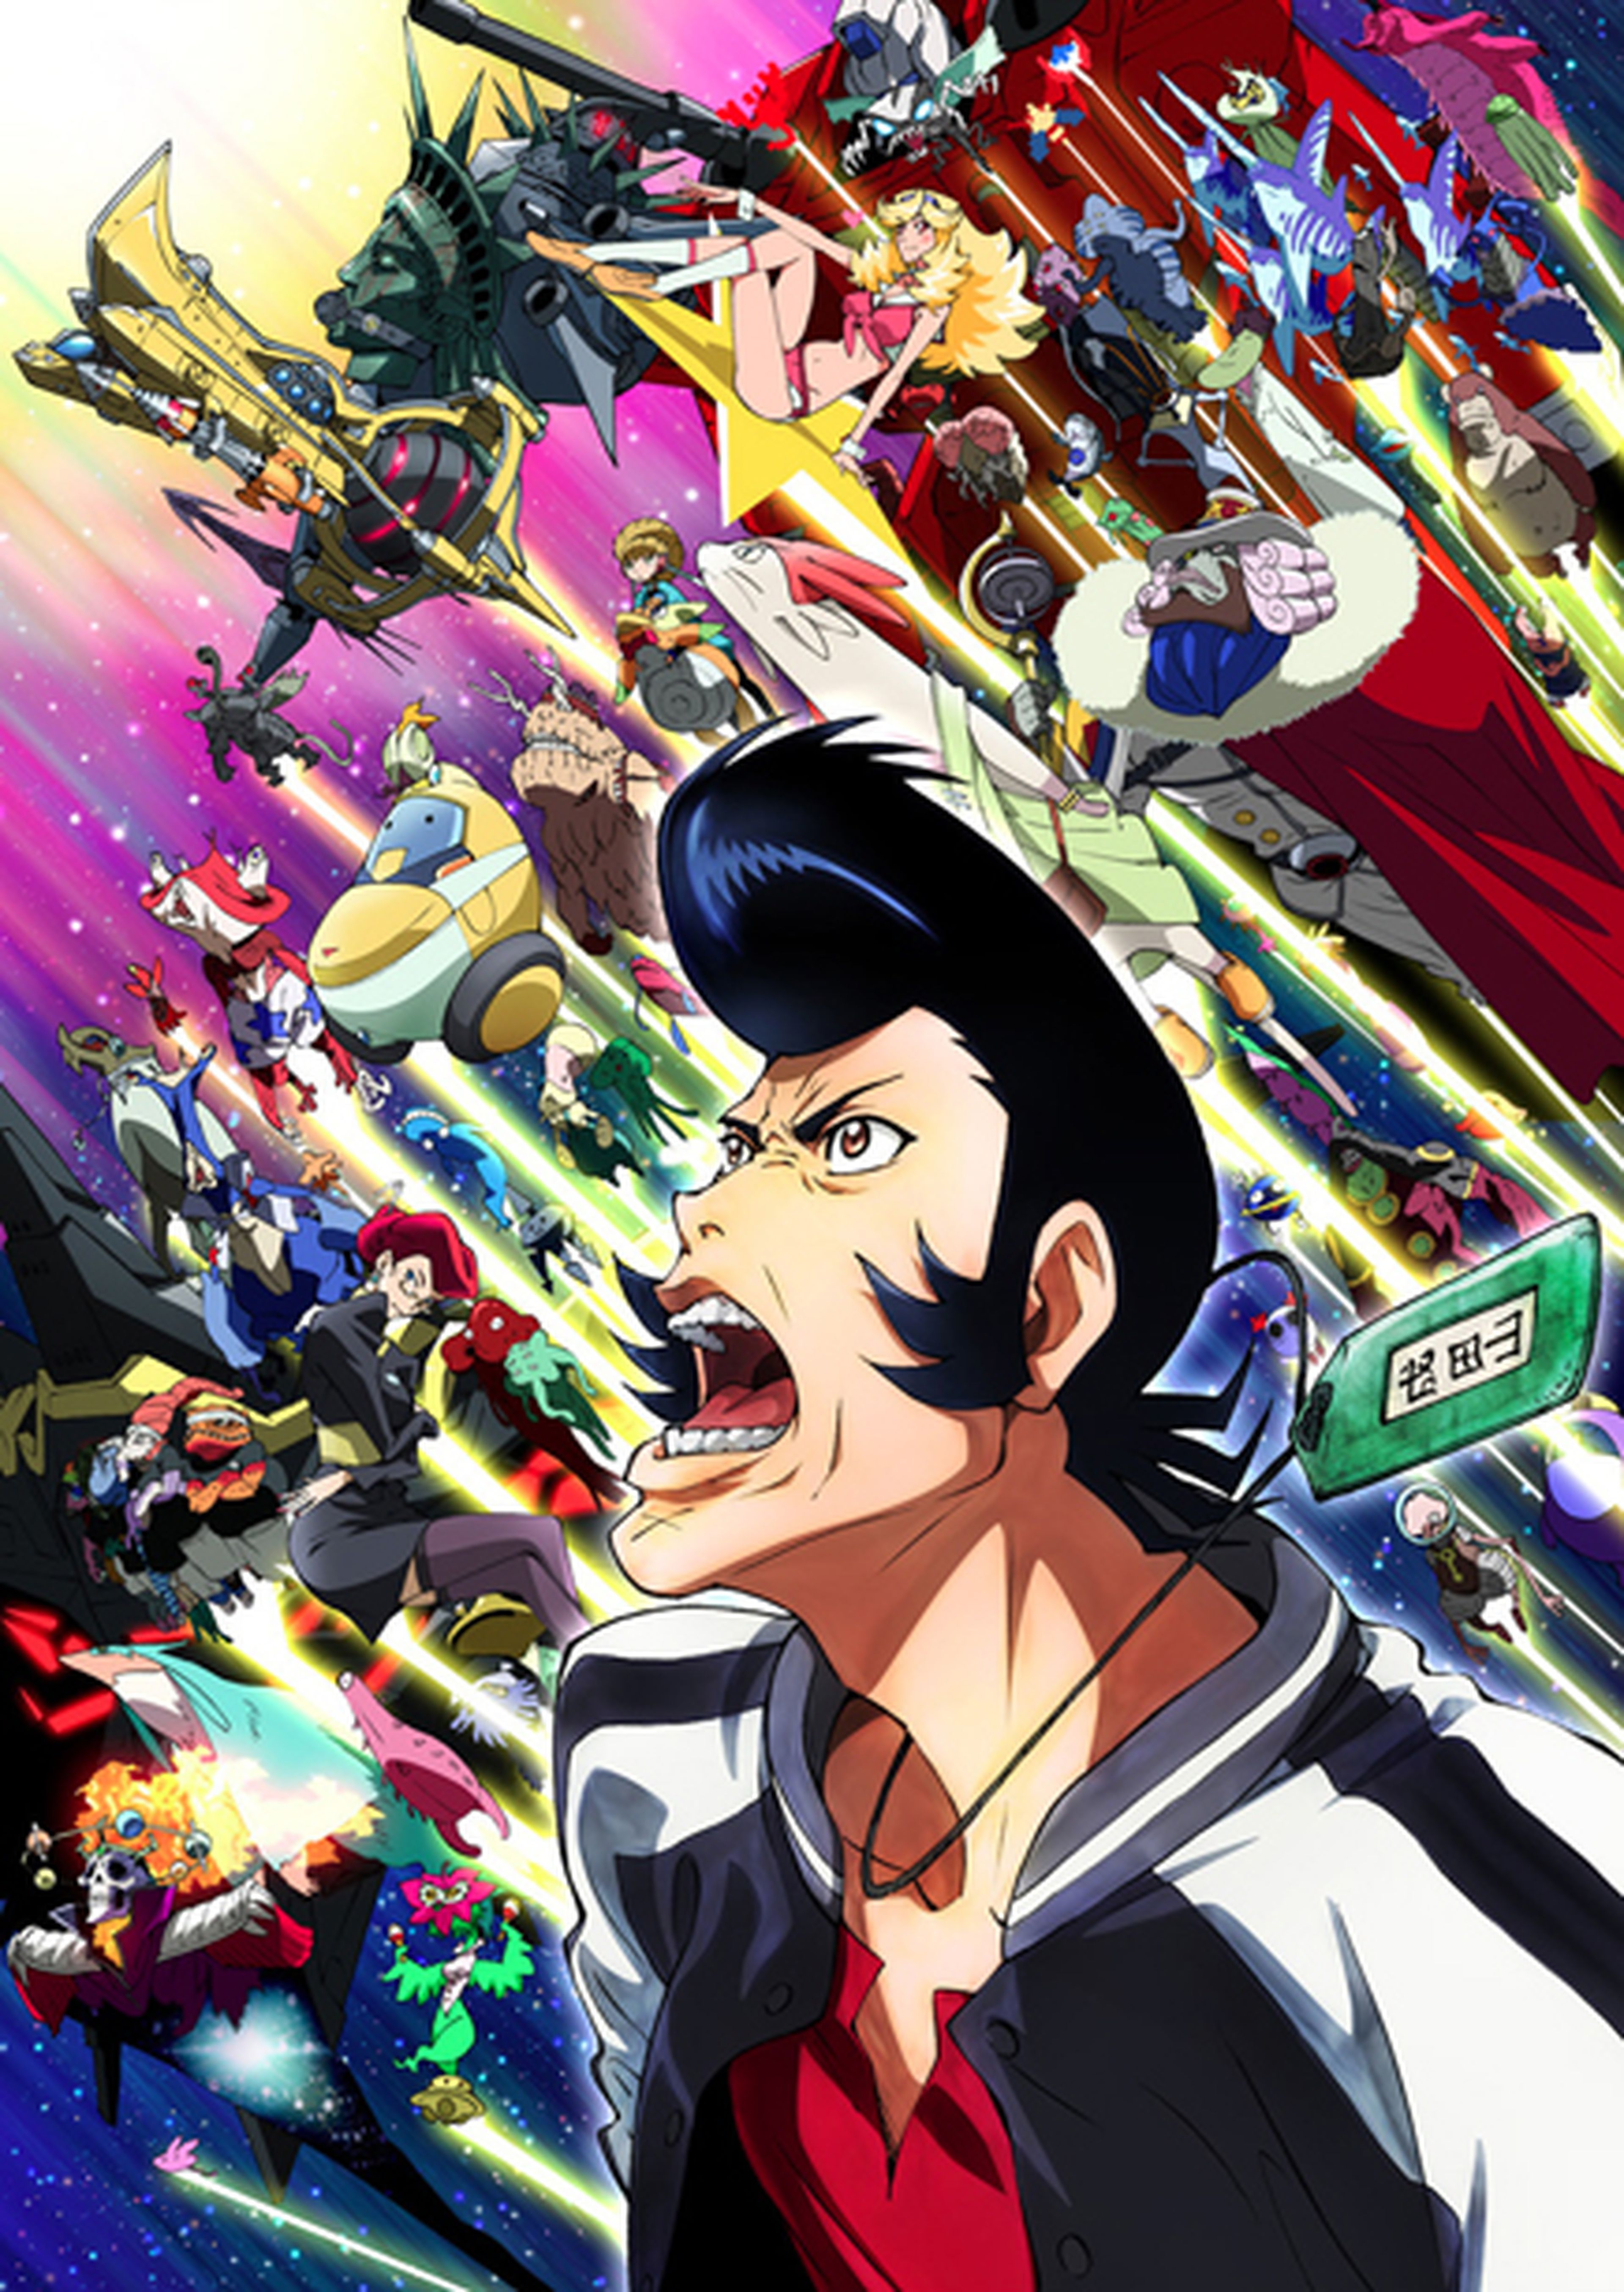 El anime Space Dandy tendrá segunda temporada